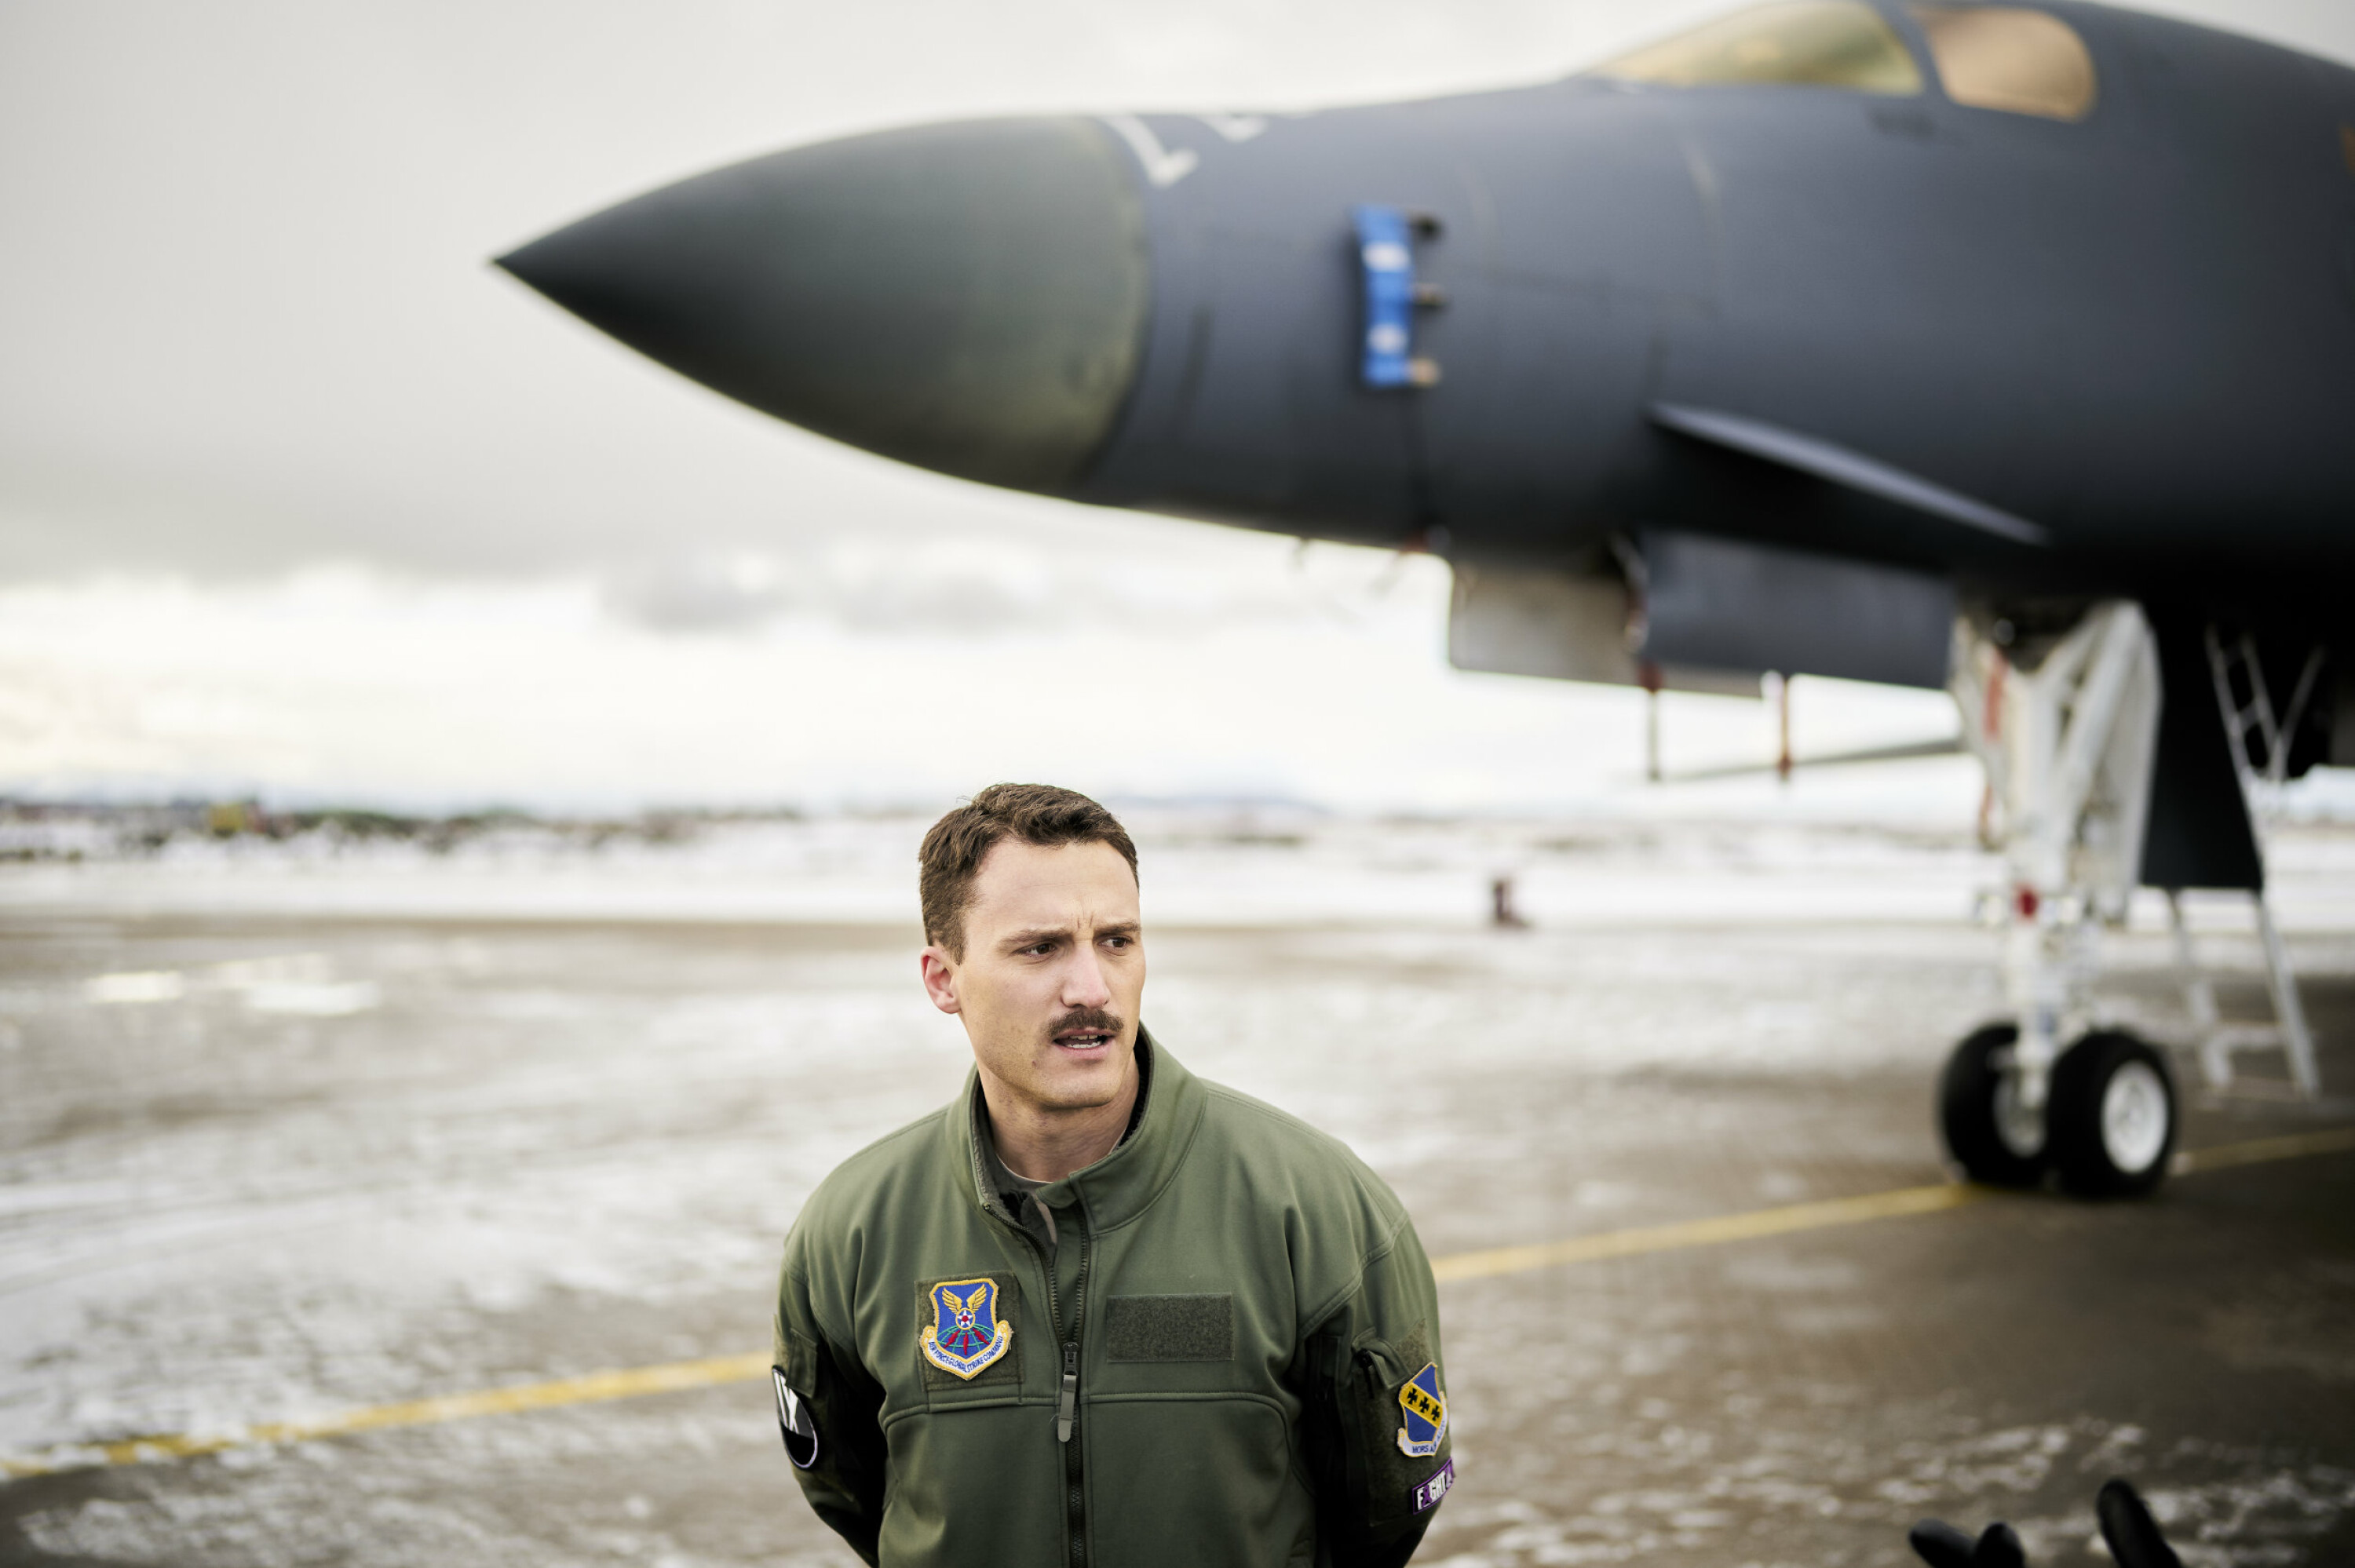 VIKTIG: Den amerikanske piloten på Ørland sier til Forsvarets forum at samtreningen med nordmennene er viktig.